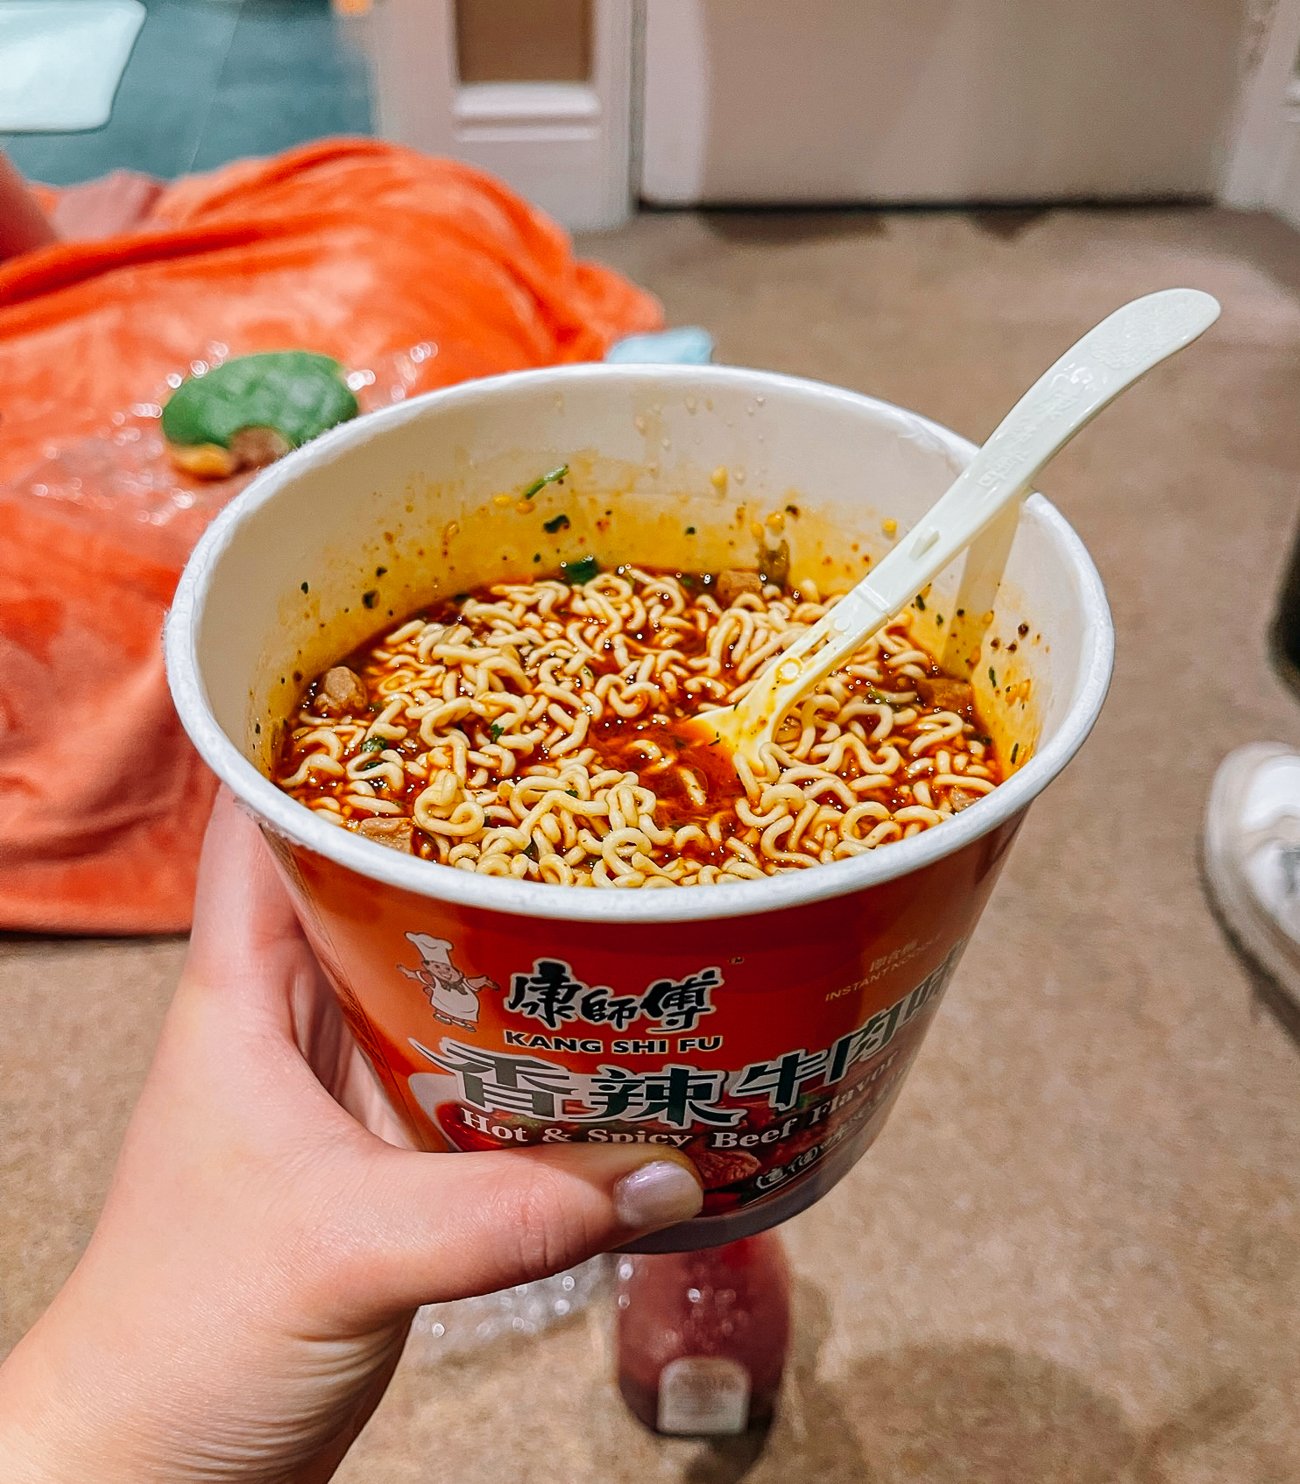 Cup of spicy beef instant noodles eaten on the floor